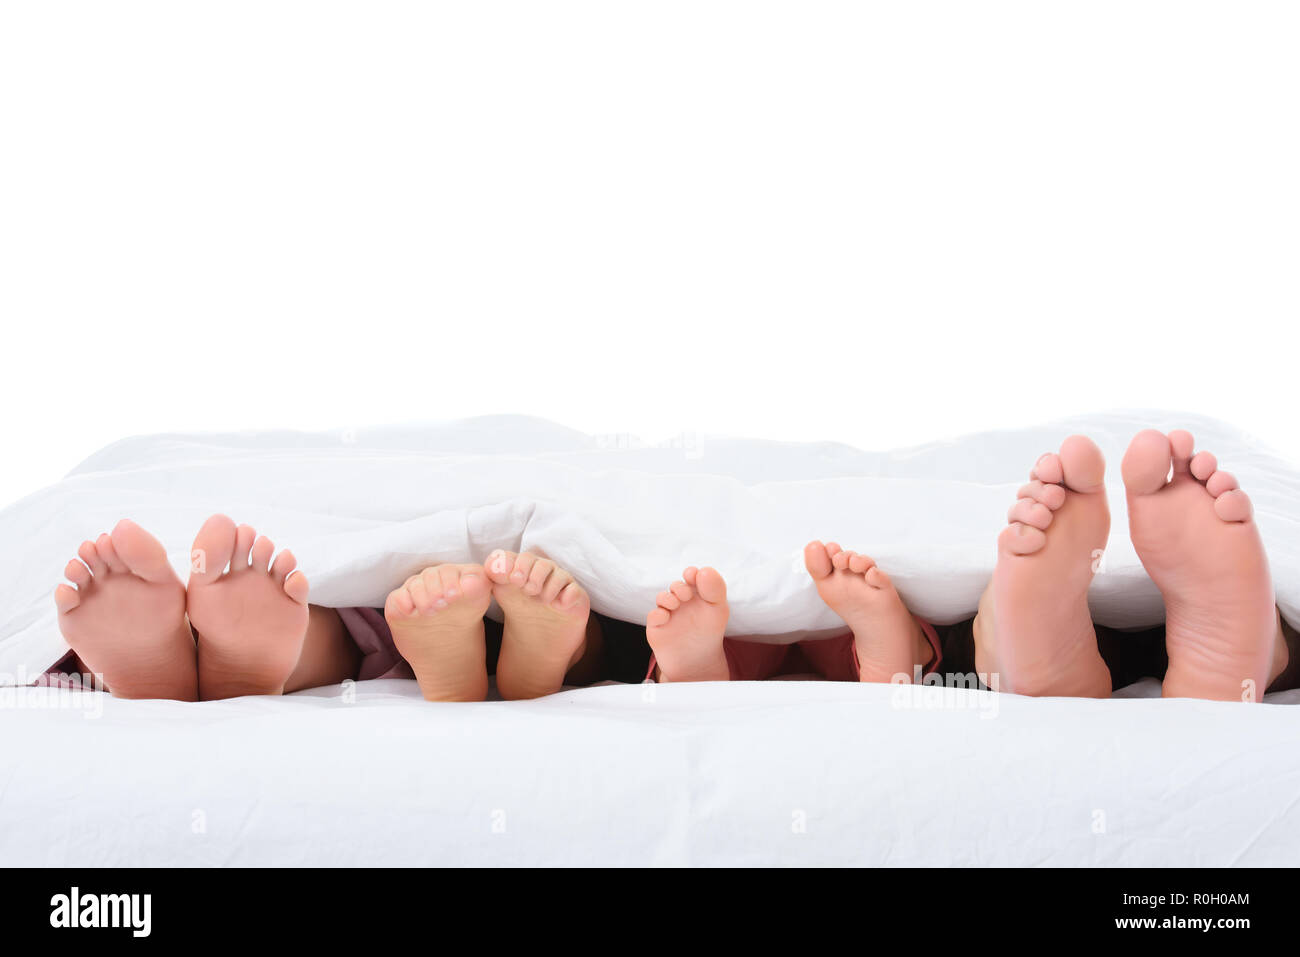 Familie Füße im Bett unter weißen Decke, isoliert auf weißem  Stockfotografie - Alamy